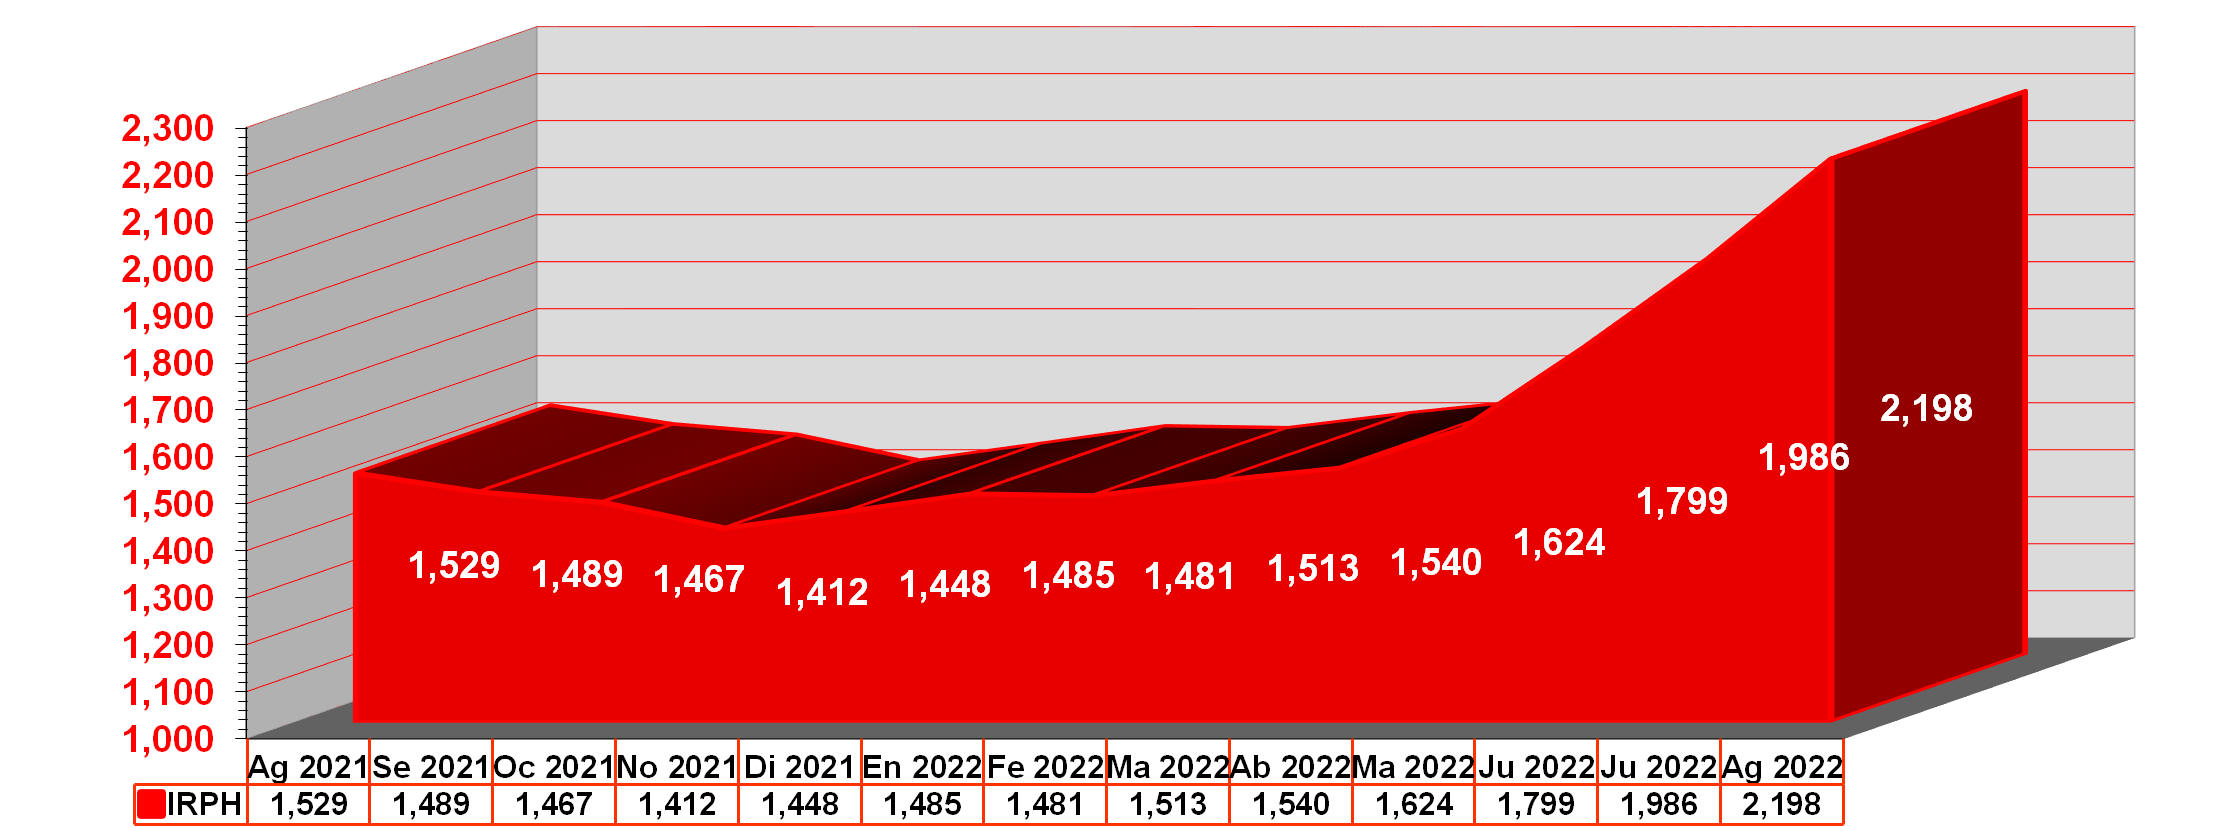 Gráfico IRPH desde agosto de 2021 hasta agosto de 2022